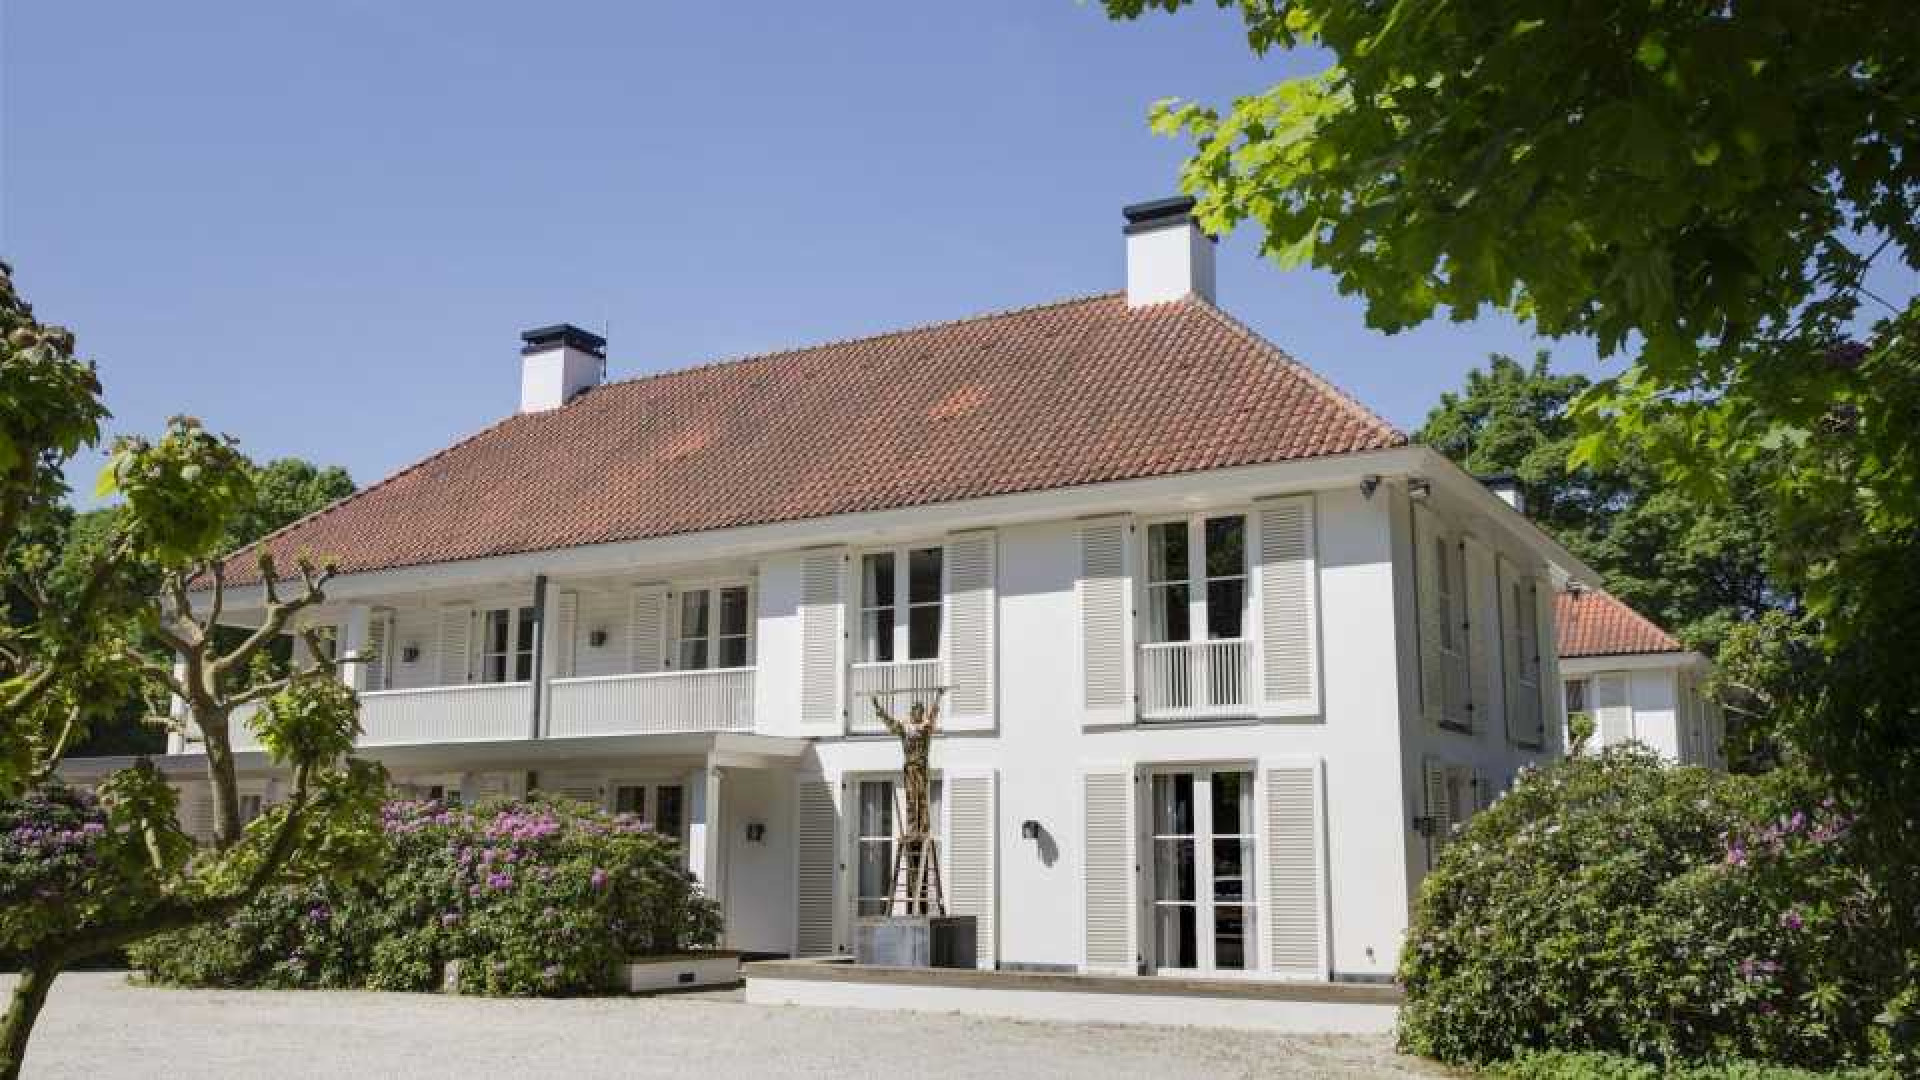 Oud minister en platenbaas Herman Heinsbroek zet zijn Gooise miljoenen landhuis te koop. Zie foto's